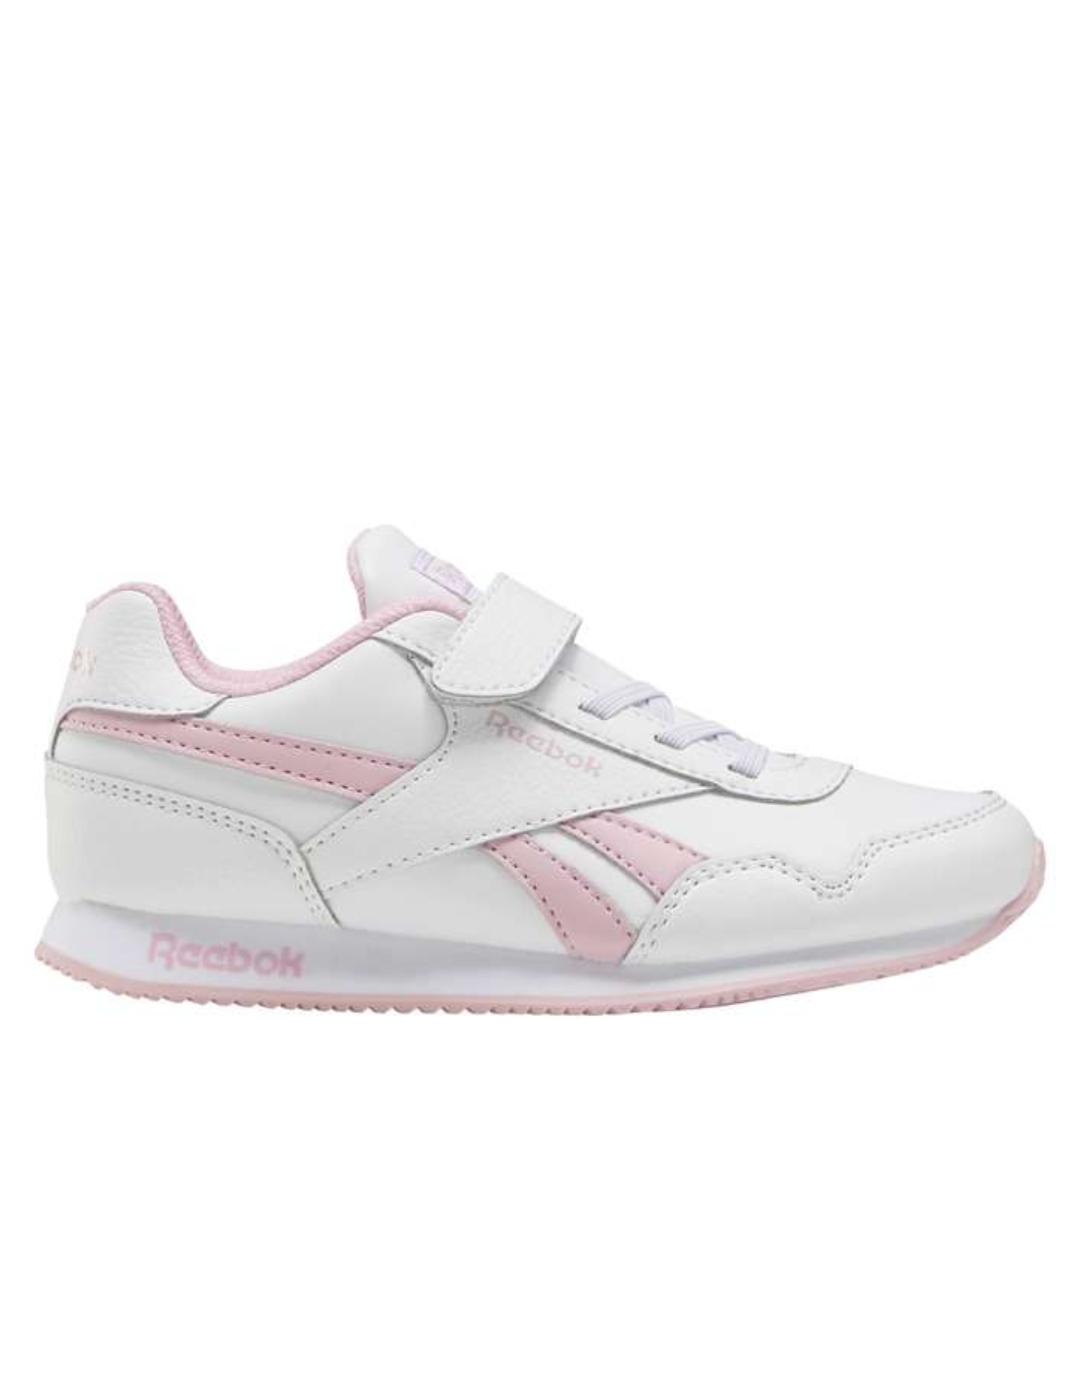 Zapatillas reebok royal cljog 3.0 blanco rosa de niña.